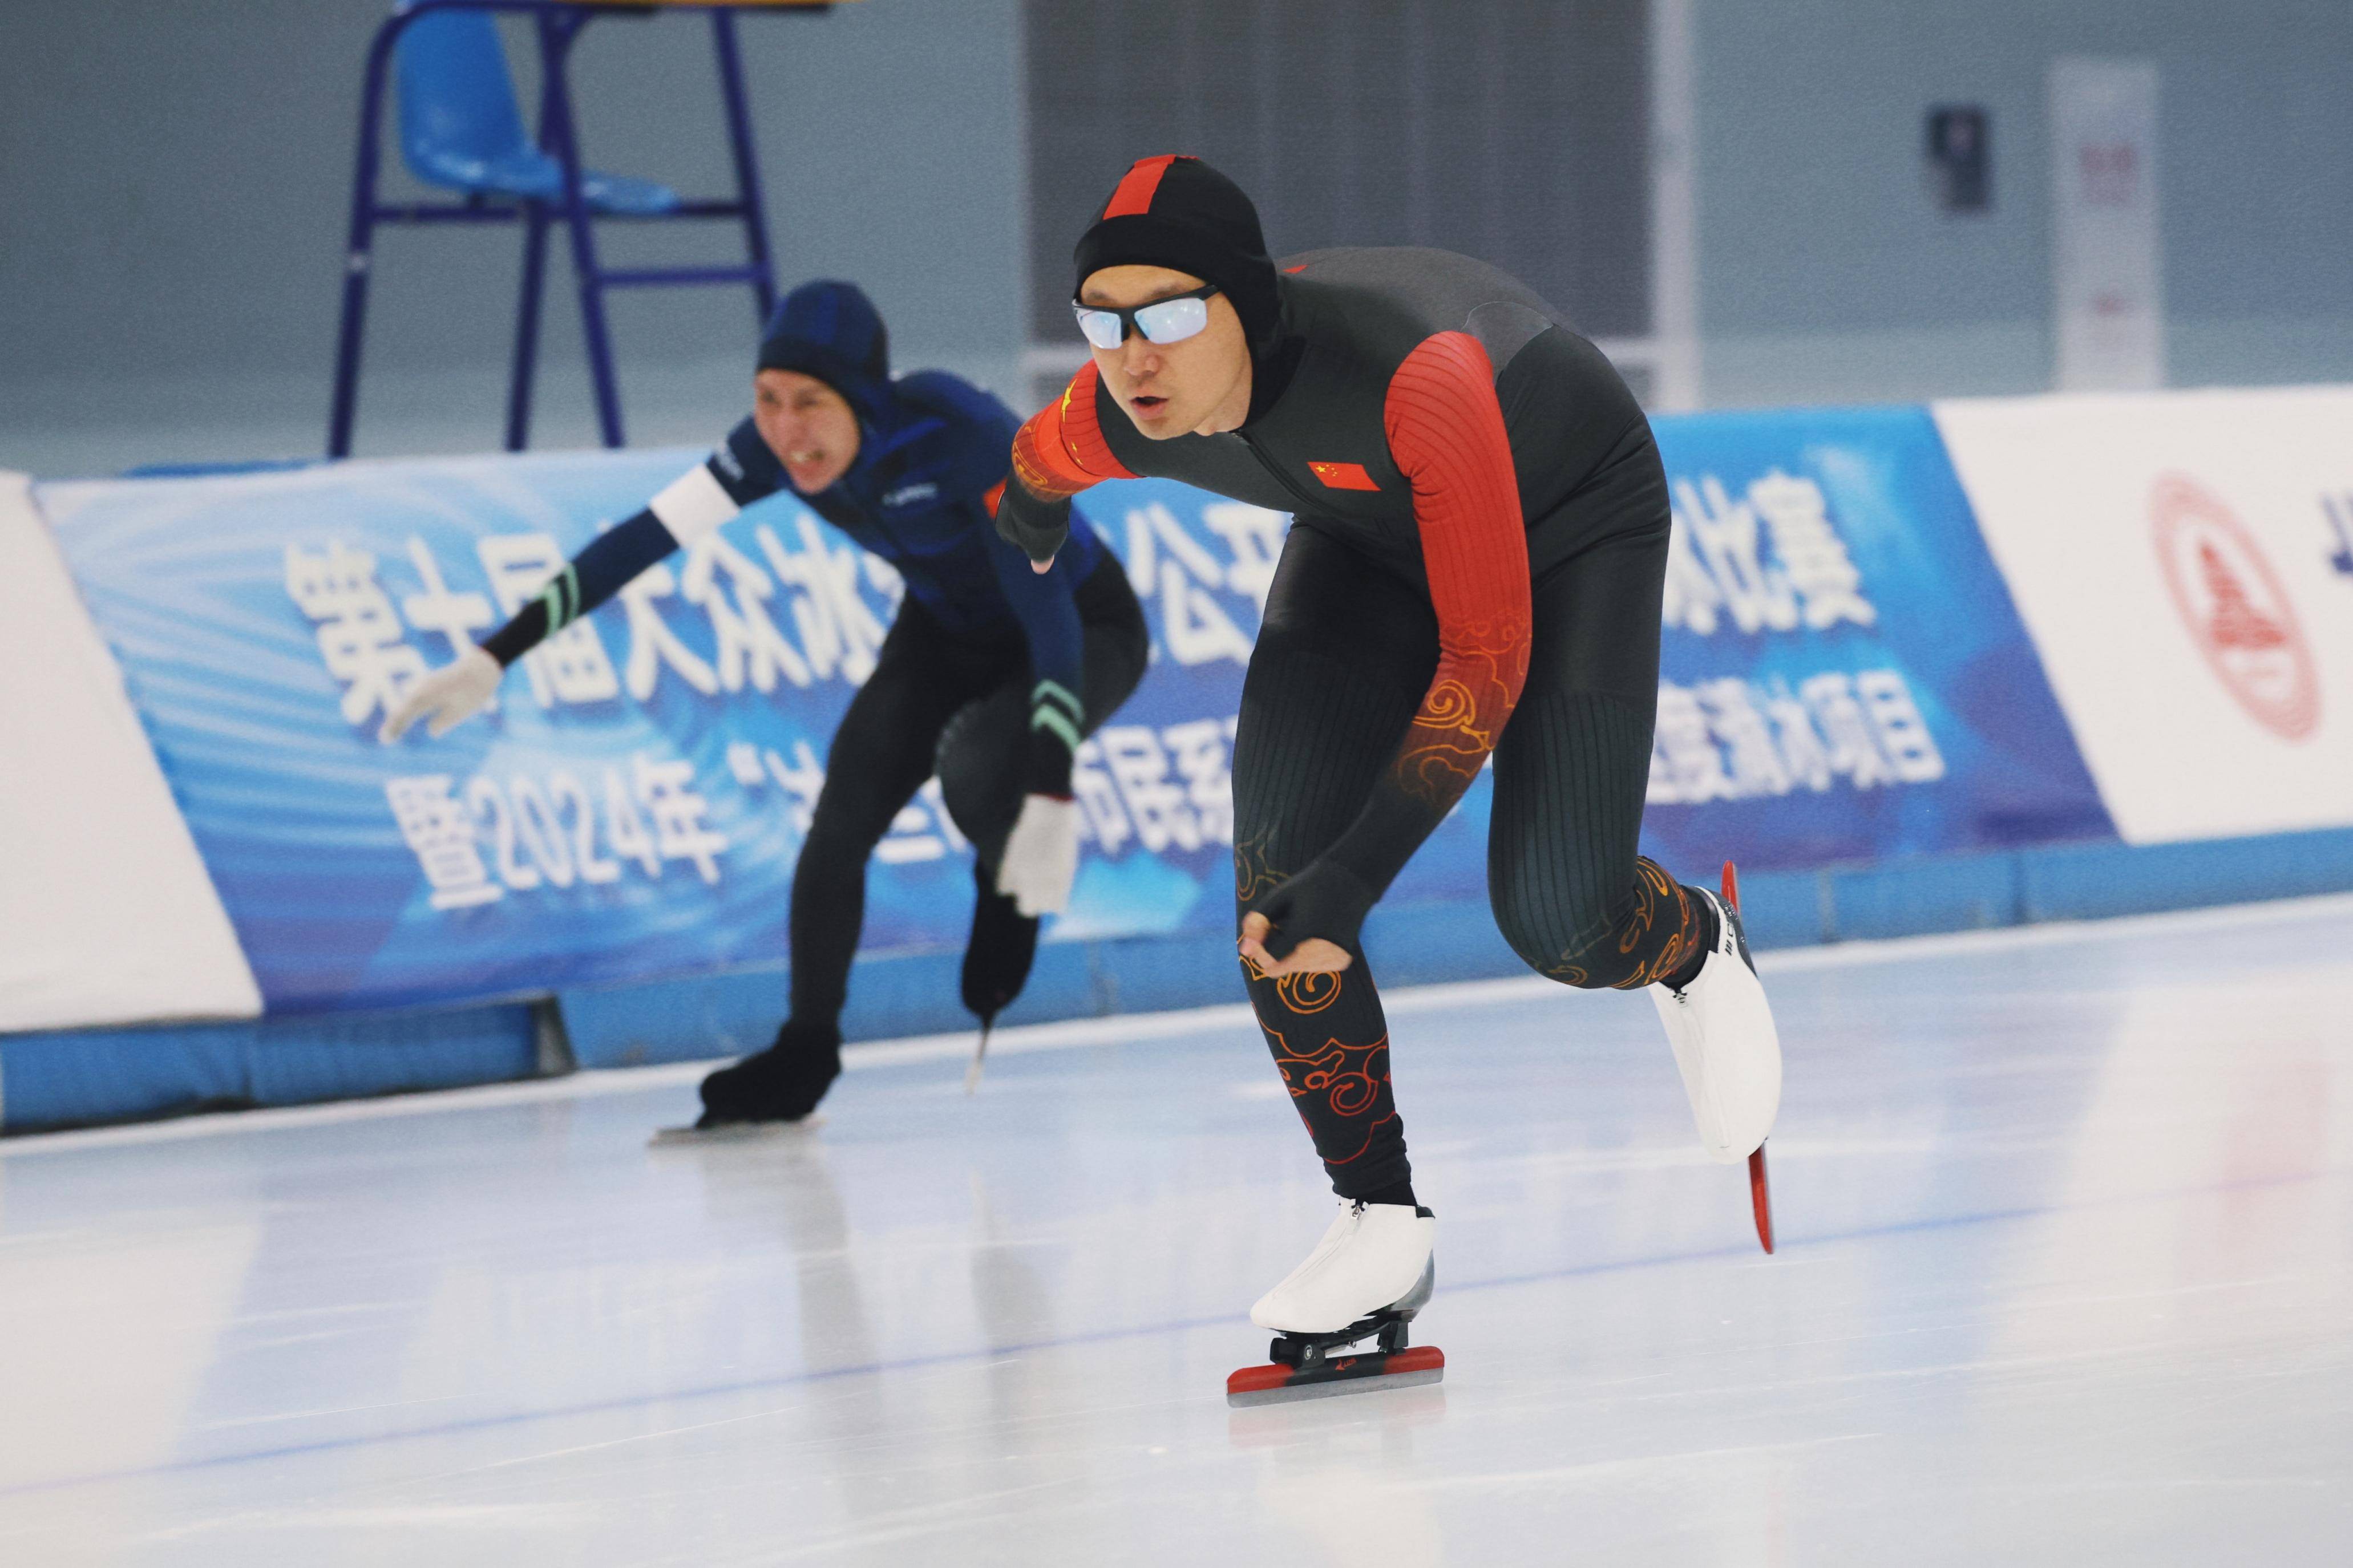 第十届大众冰雪北京公开赛速度滑冰比赛举行